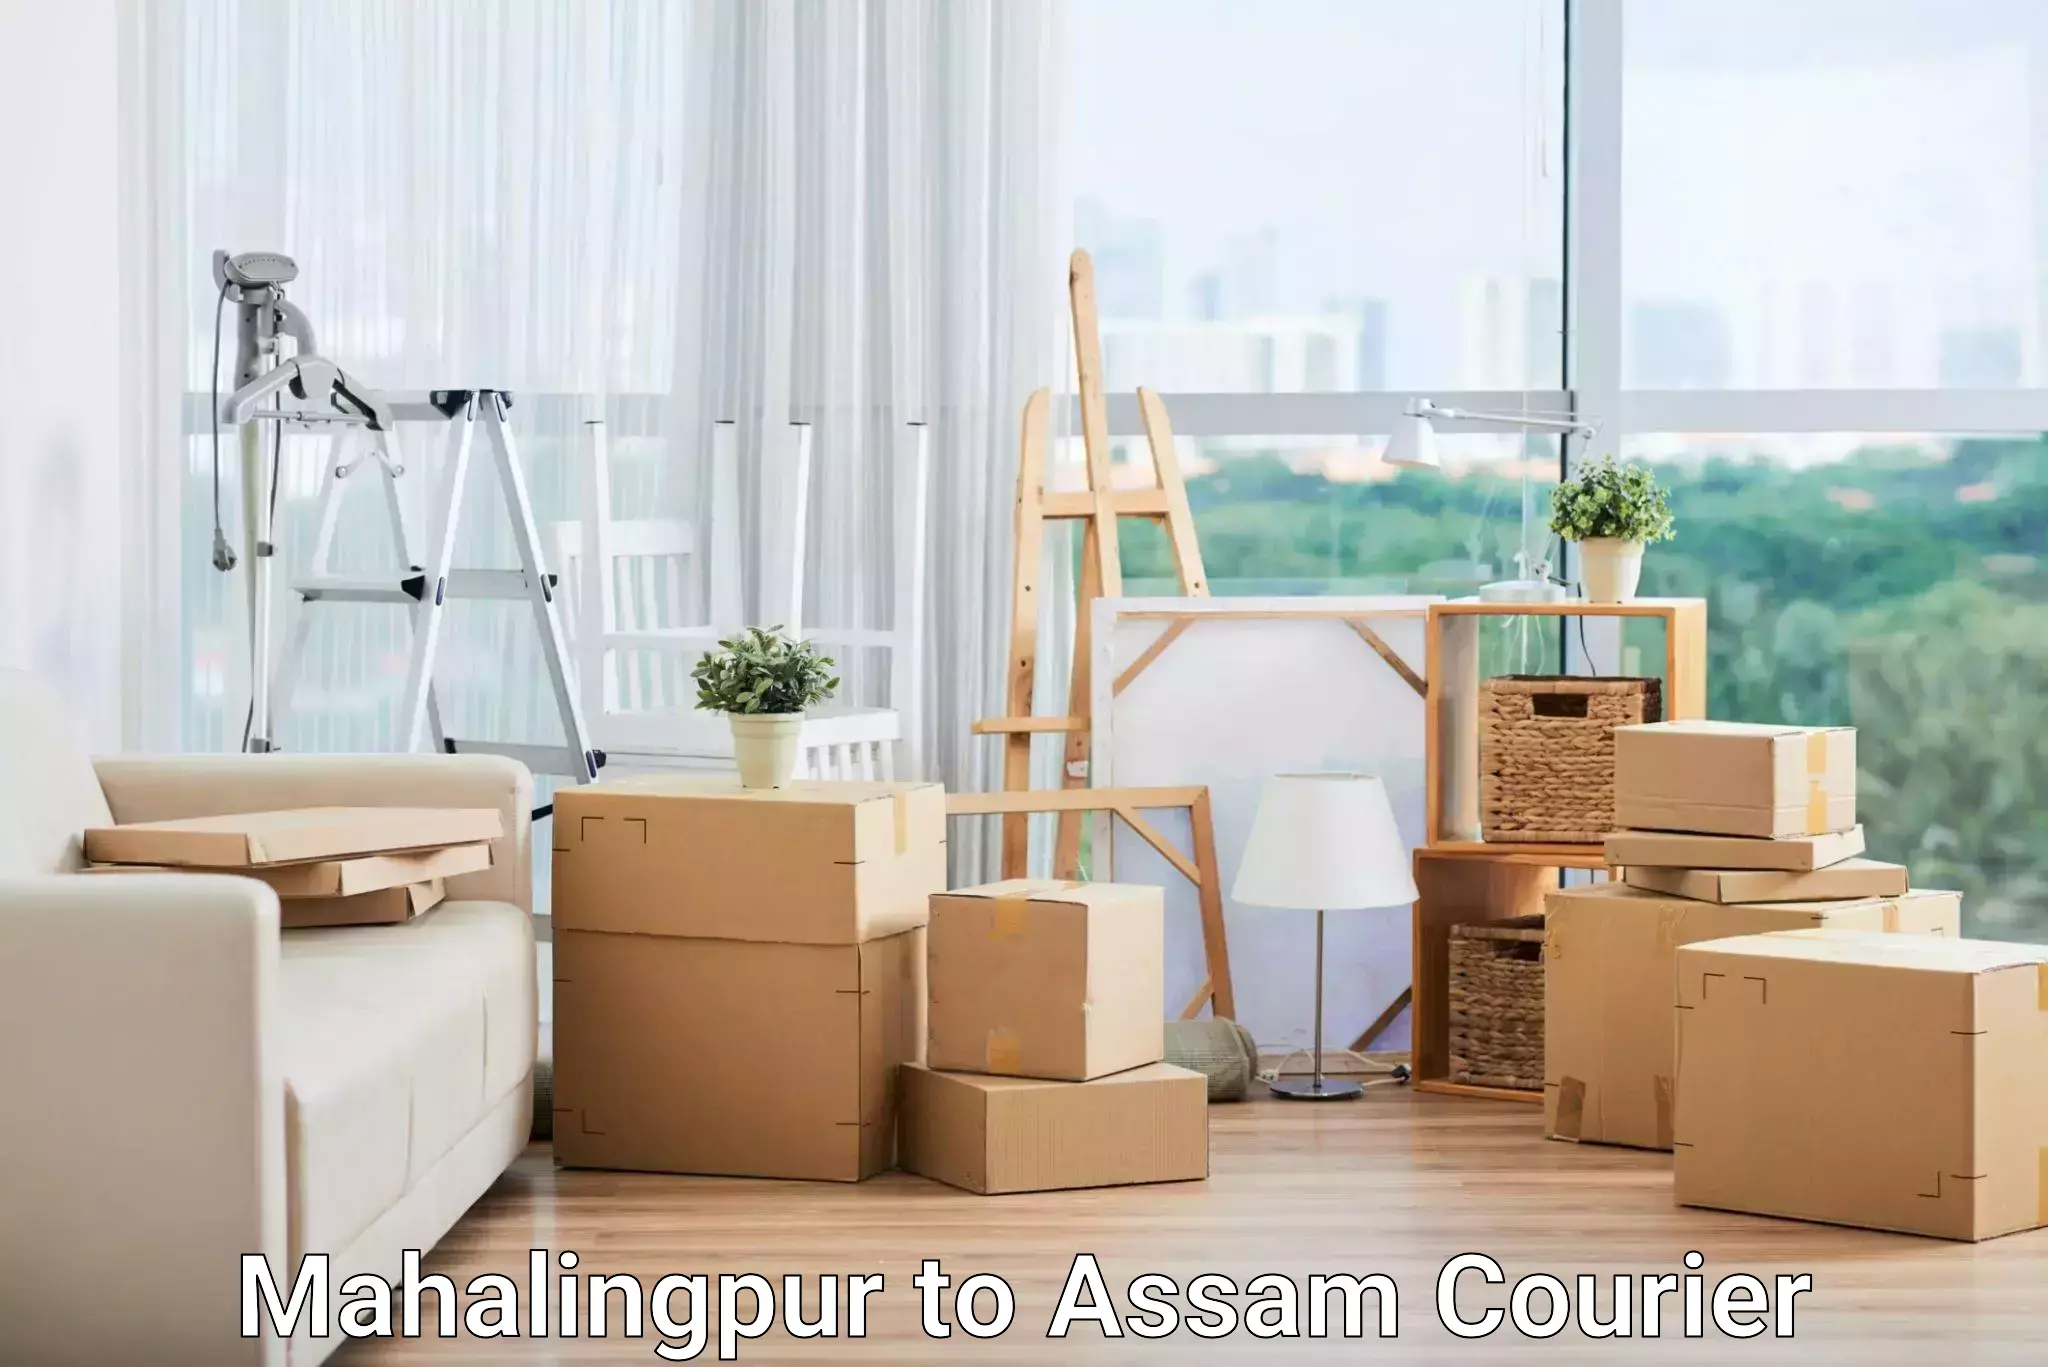 Courier service comparison Mahalingpur to Assam